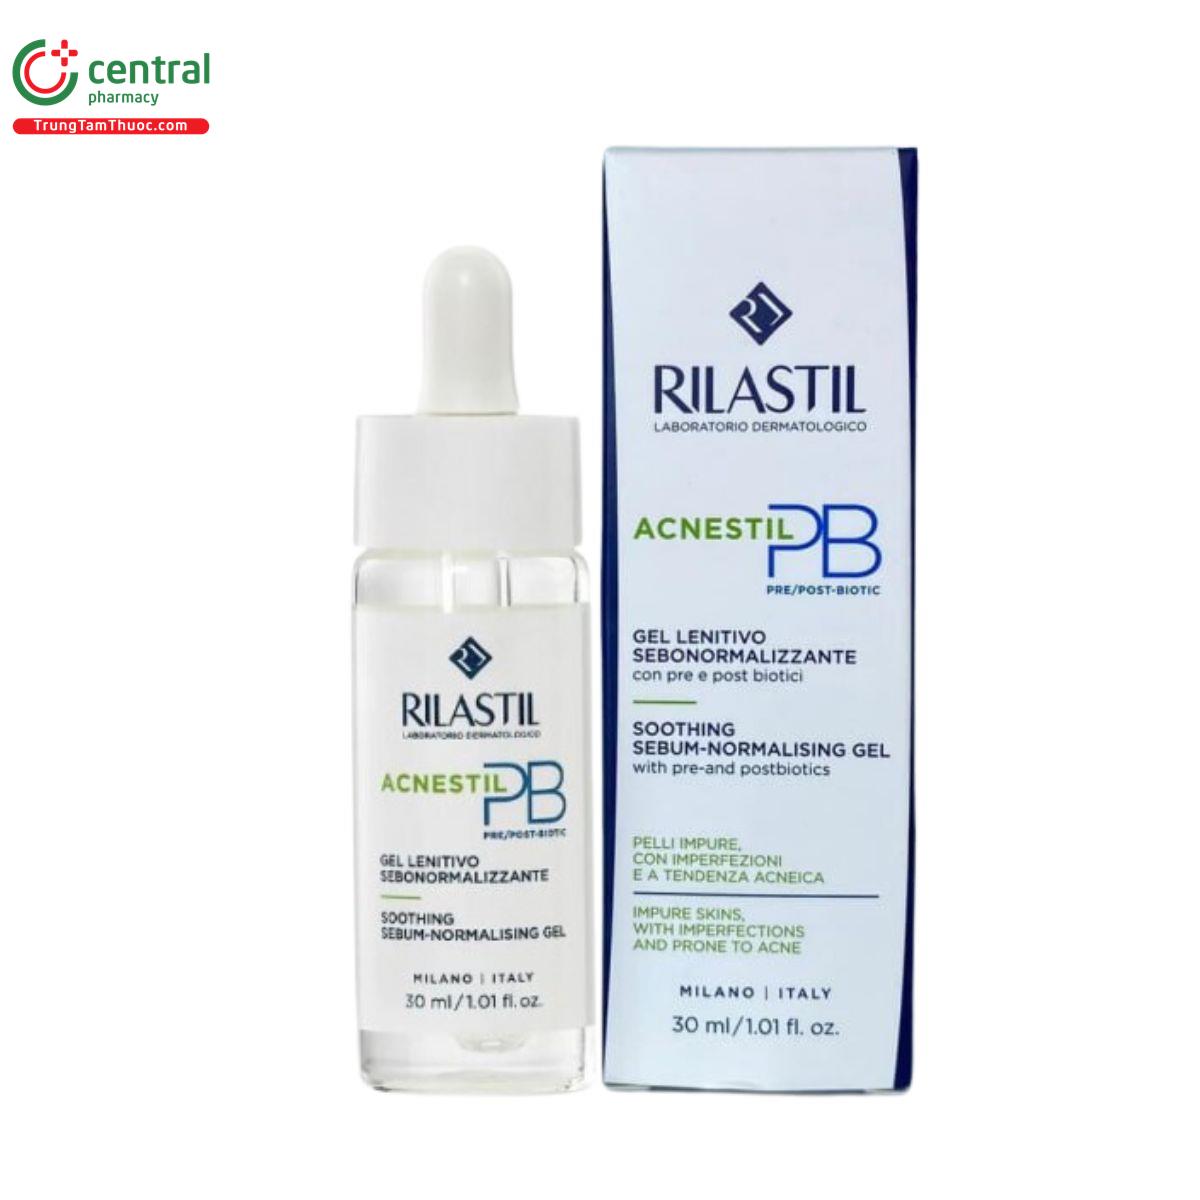 rilastil acnestil pb soothing sebum normalising gel 1 M4416